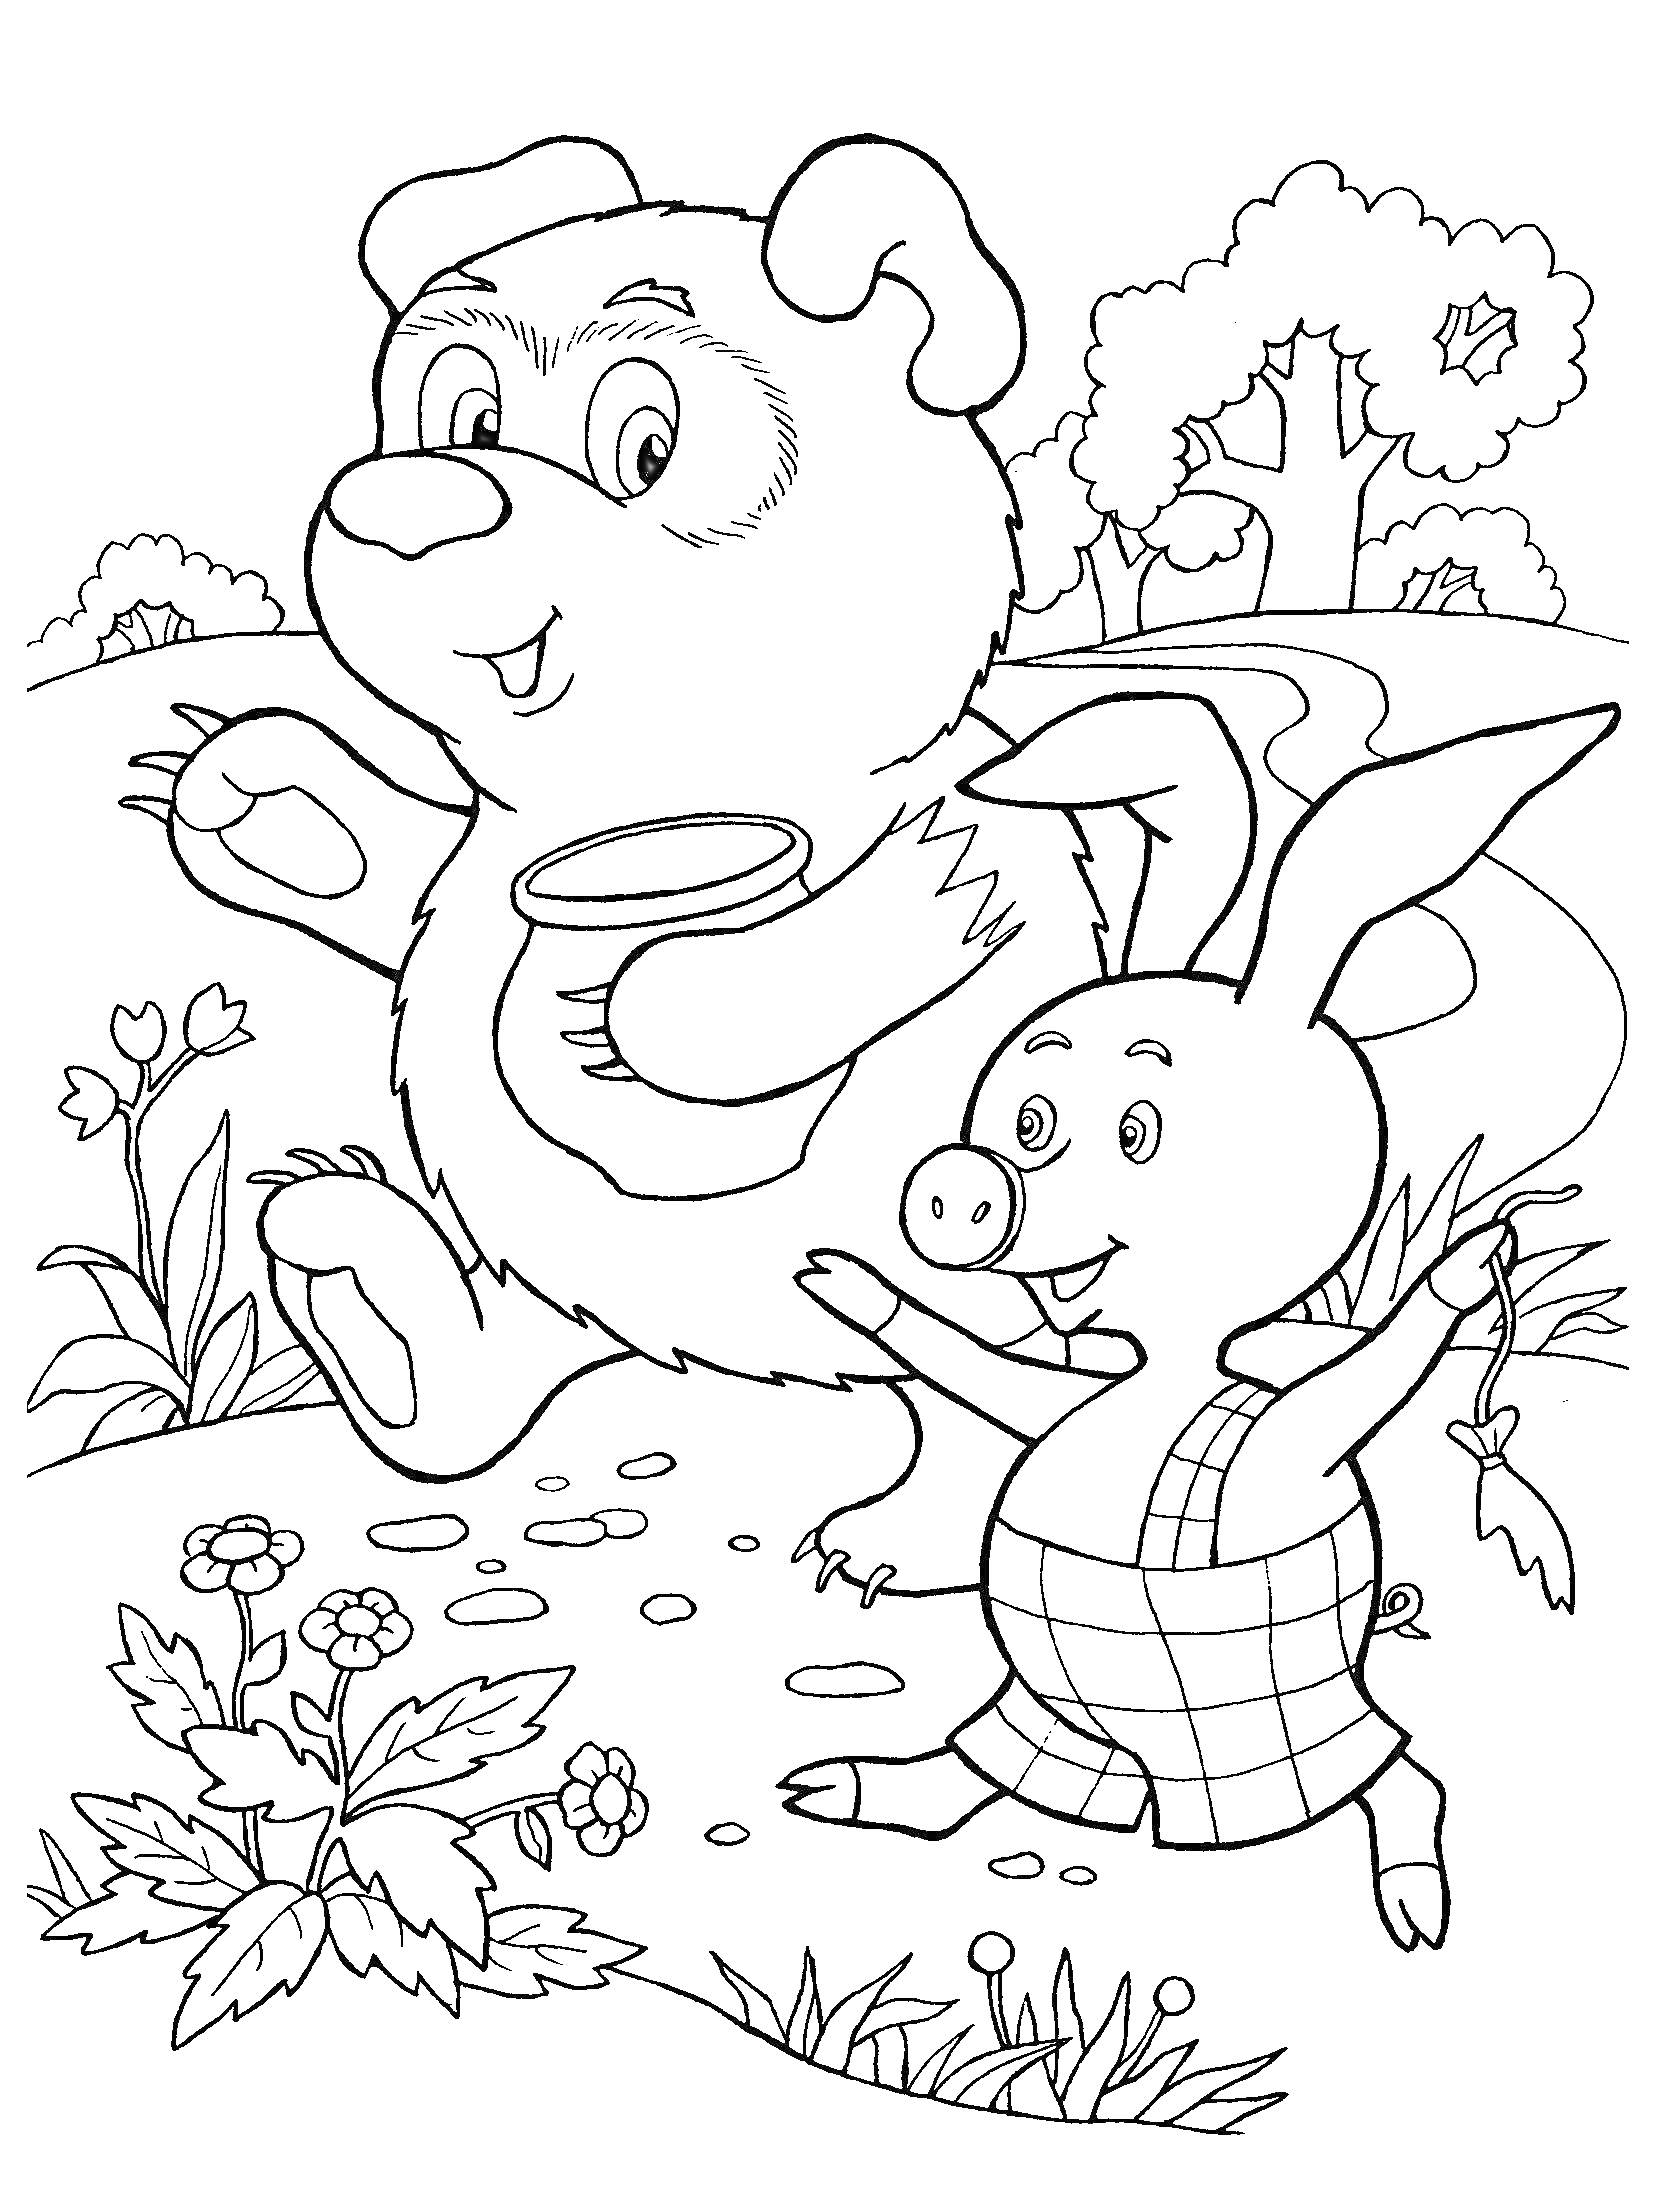 Винни Пух и Пятачок гуляют по лесу